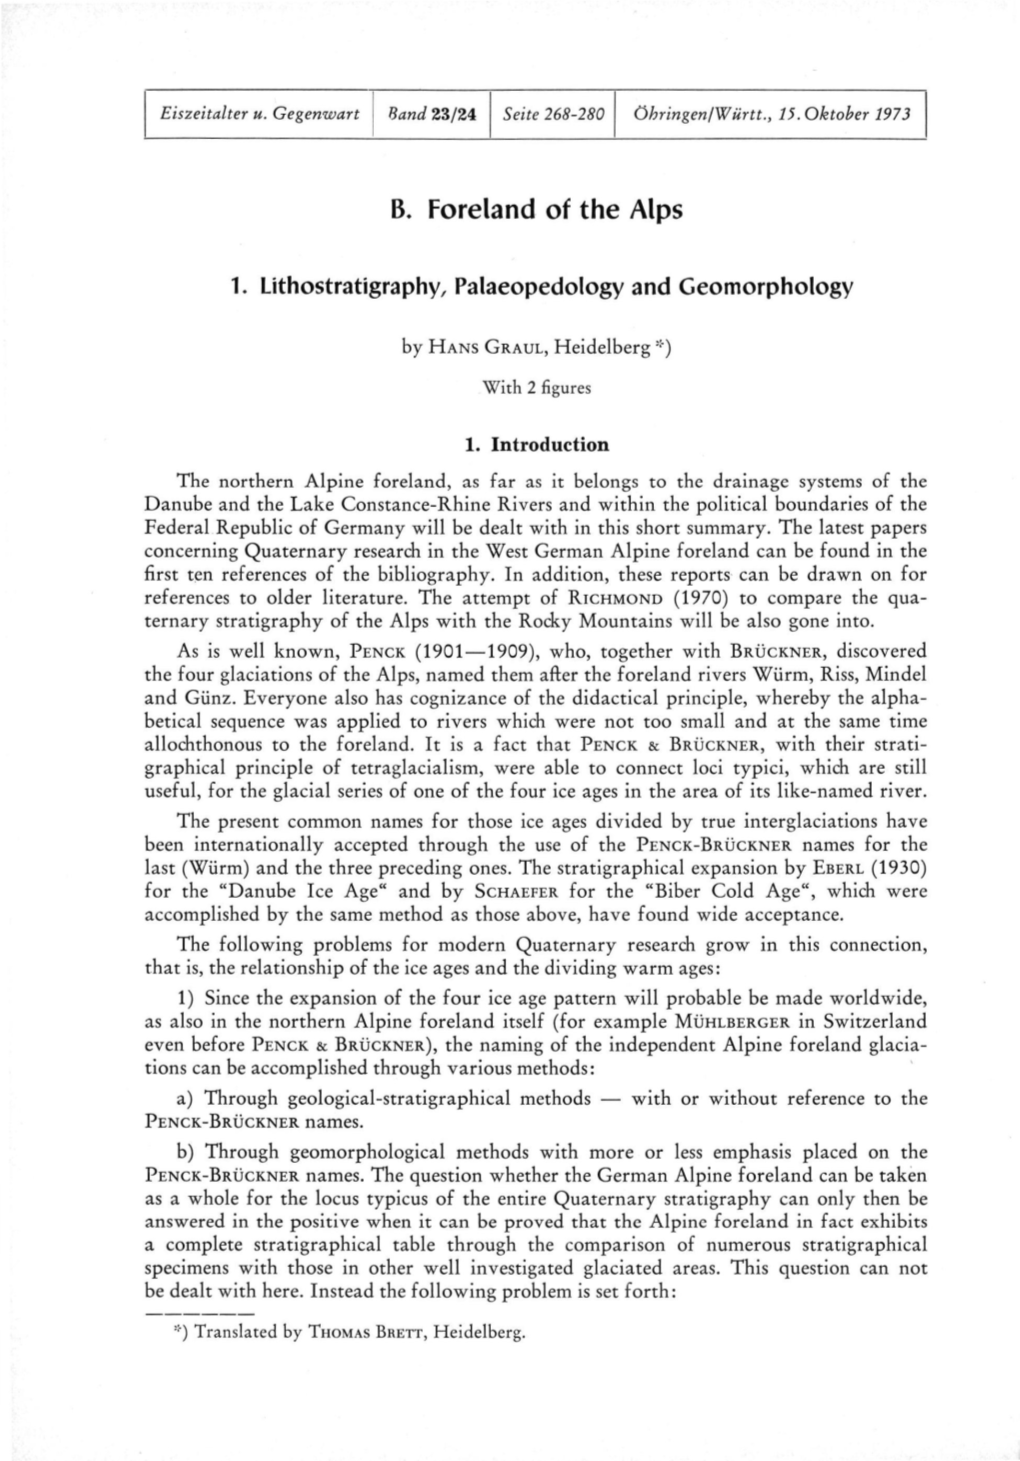 1. Lithostratigraphy, Palaeopedology and Geomorphology